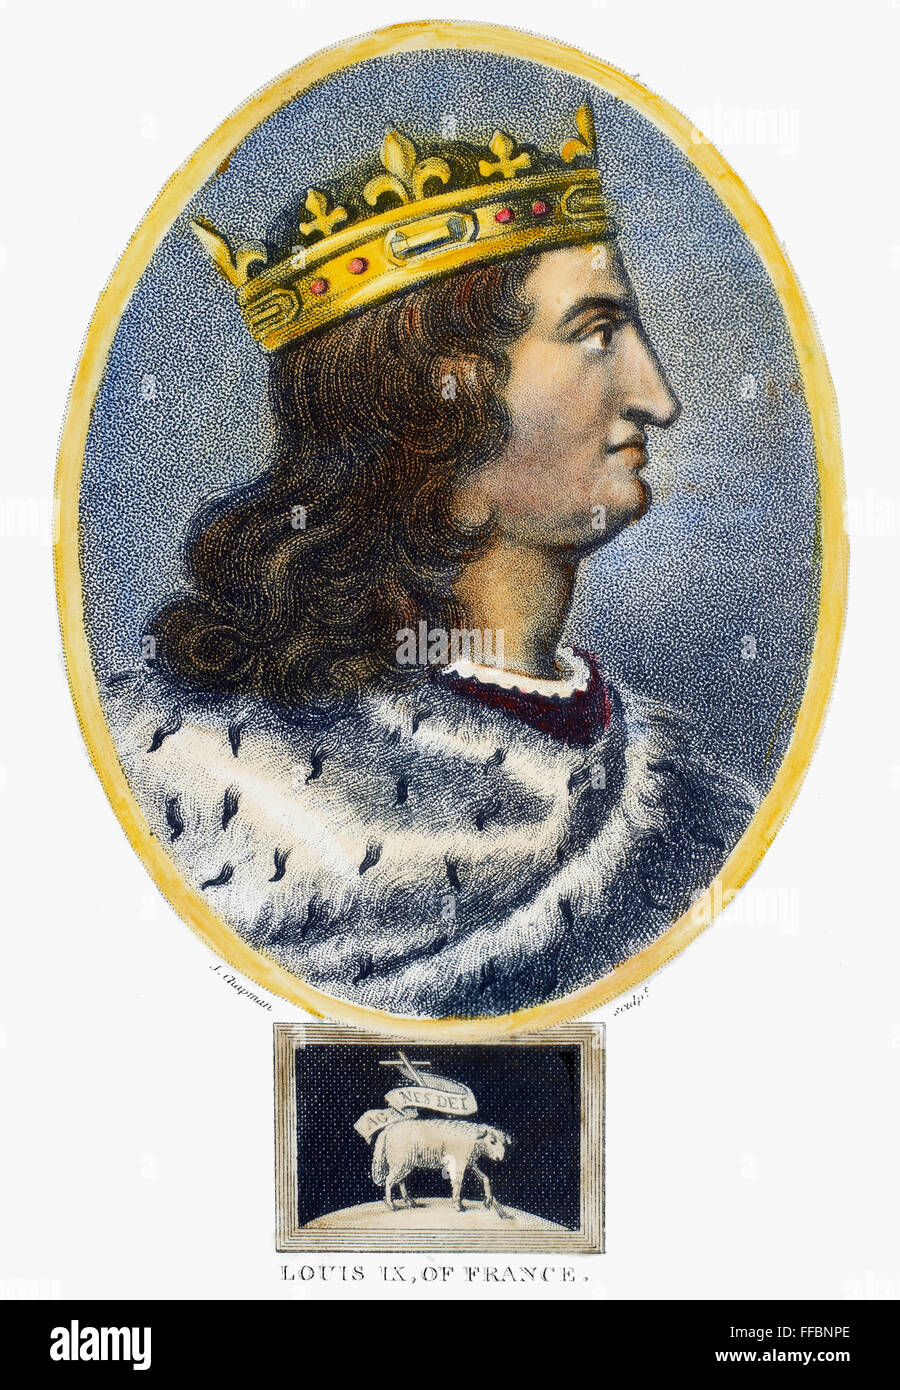 LUDWIG IX. (1214-1270). /nSaint Louis. König von Frankreich, 1226-1270. Aquatinta, Englisch, 1805. Stockfoto